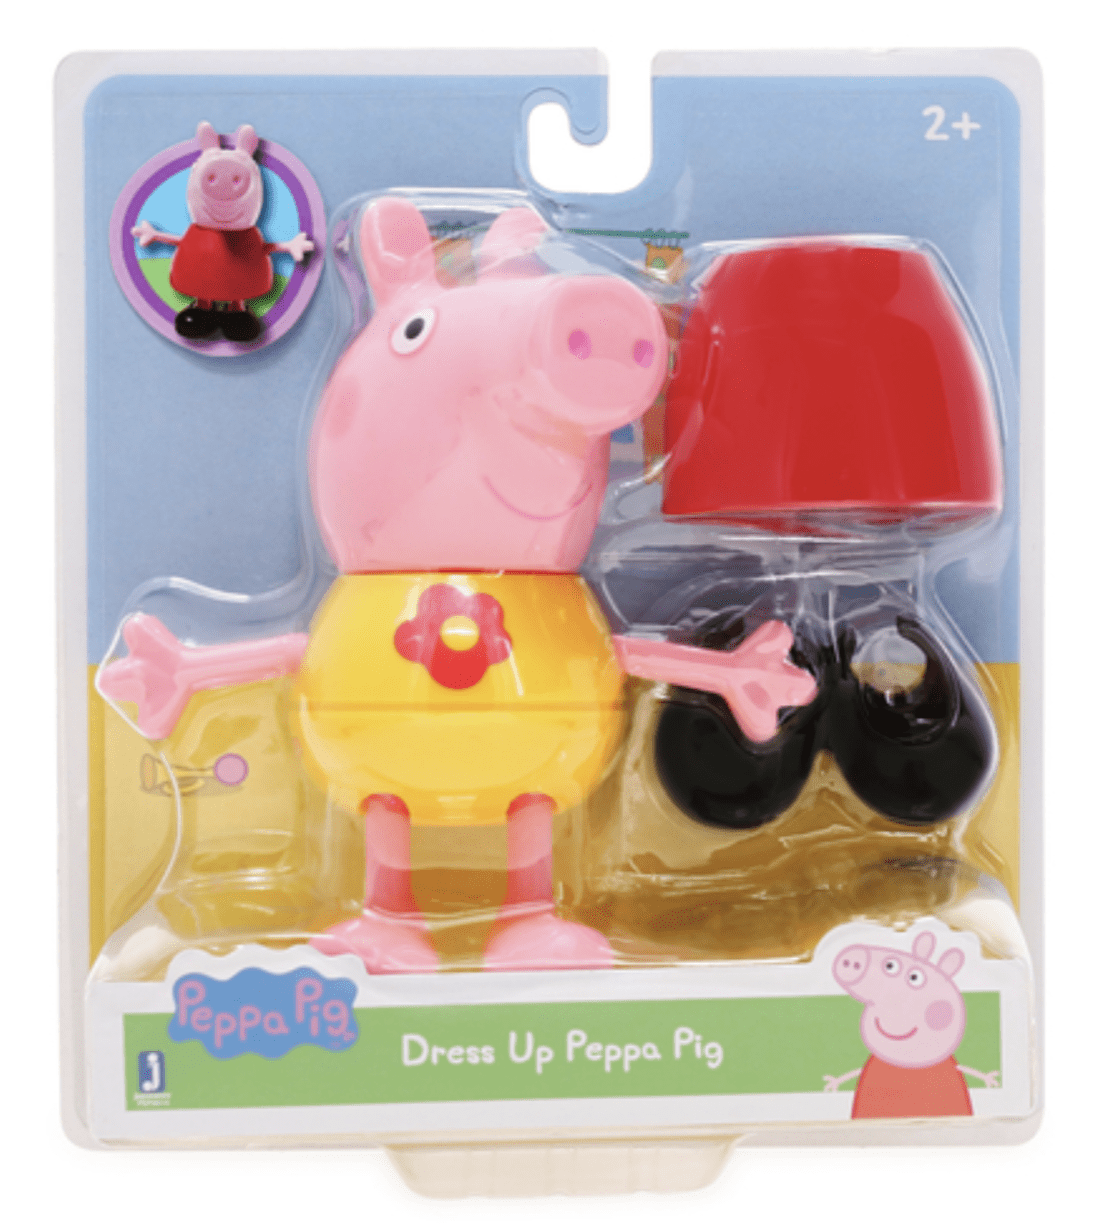 Peppa Pig Dress & Play Peppa Pig Figure Pack 